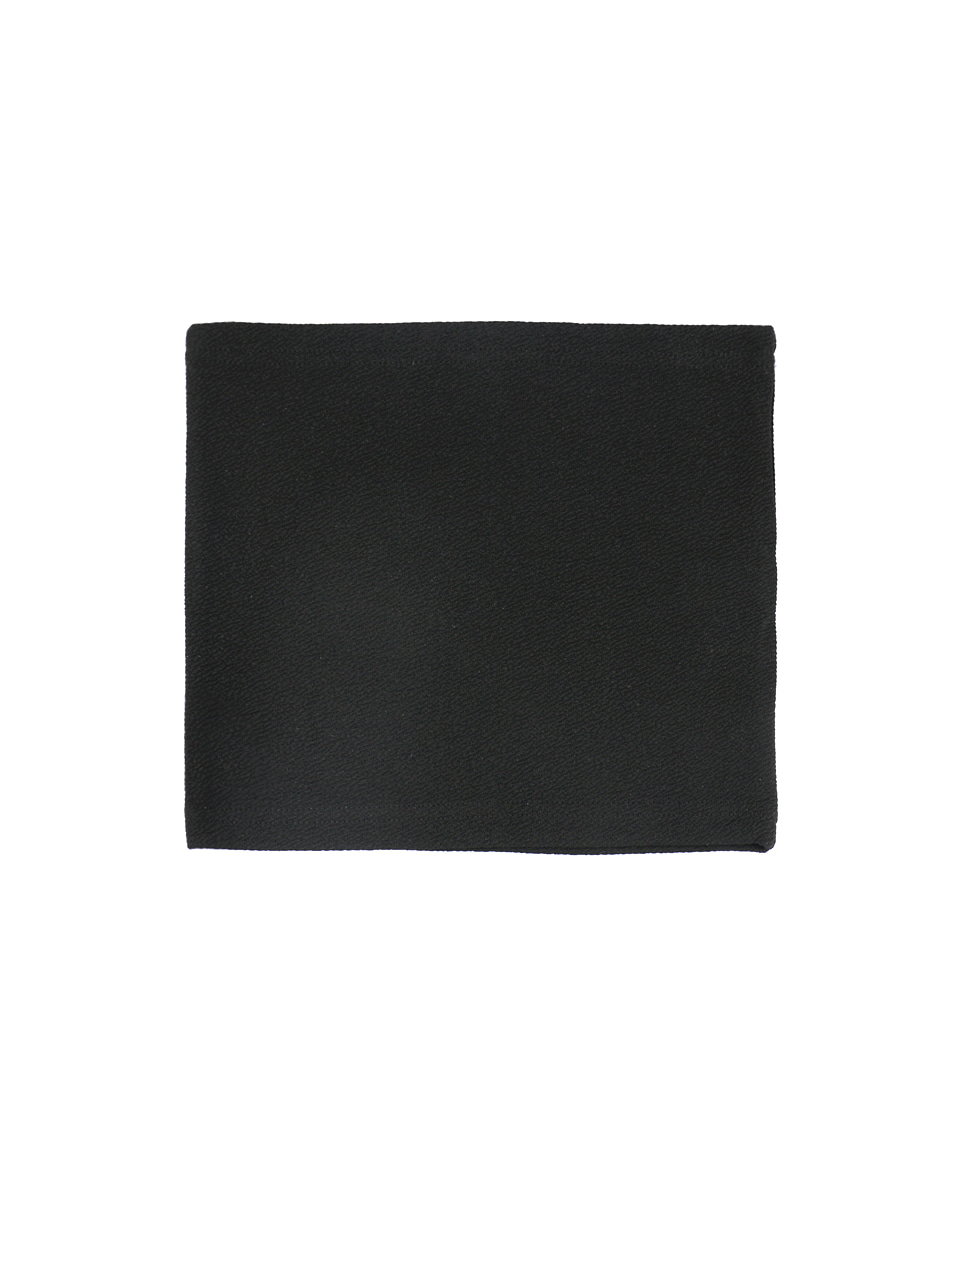 simple tube top - black